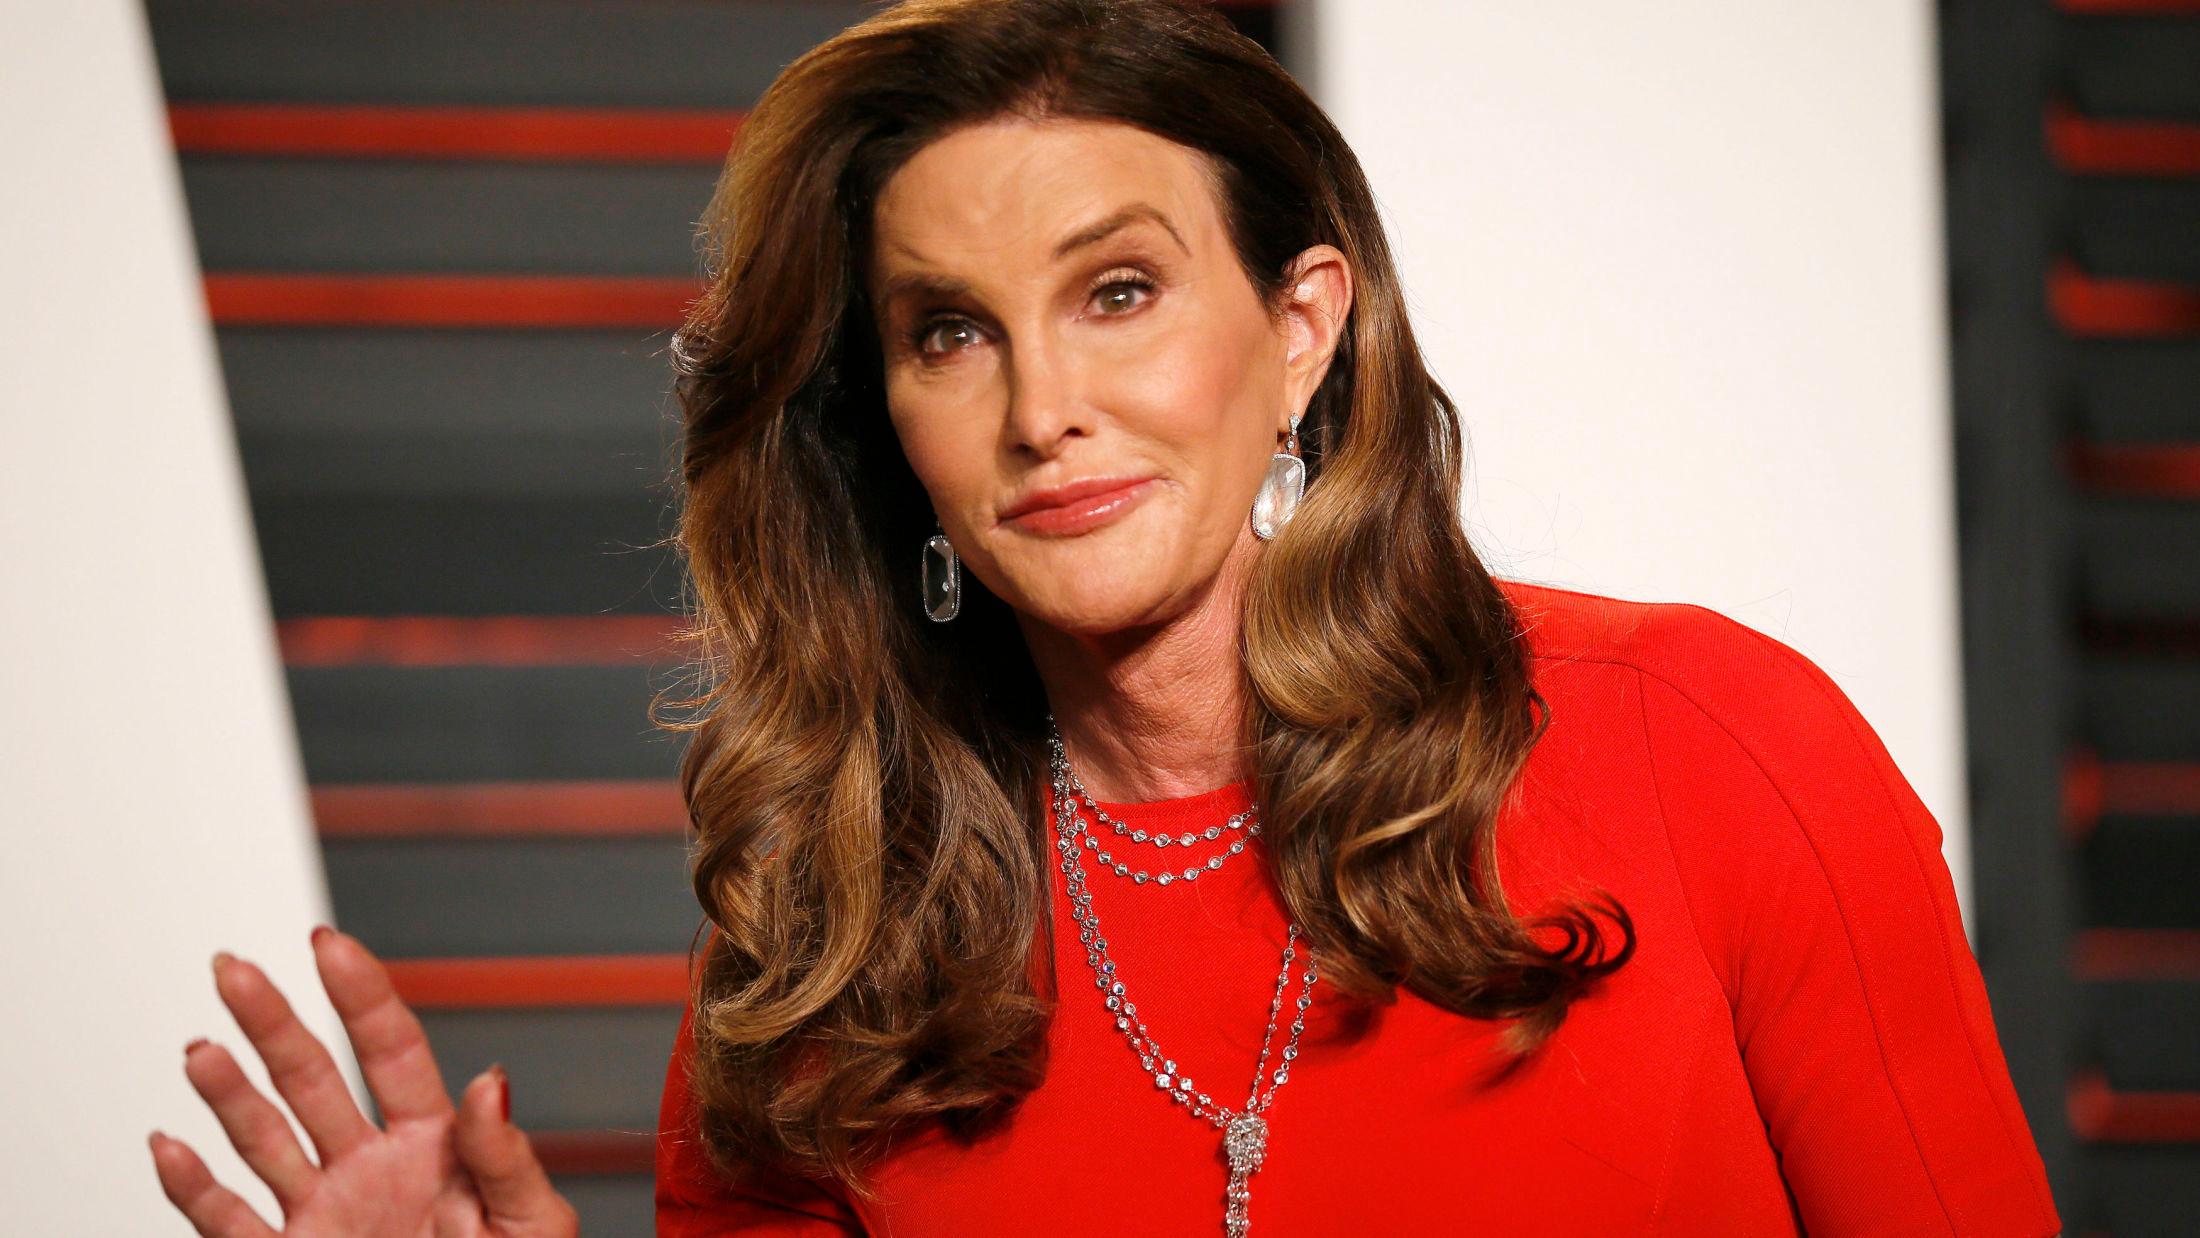 BLIR MODELL: H&M har hanket inn 66-åringen Caitlyn Jenner for å fronte deres nye sportskolleksjon. Foto: NTB scanpix